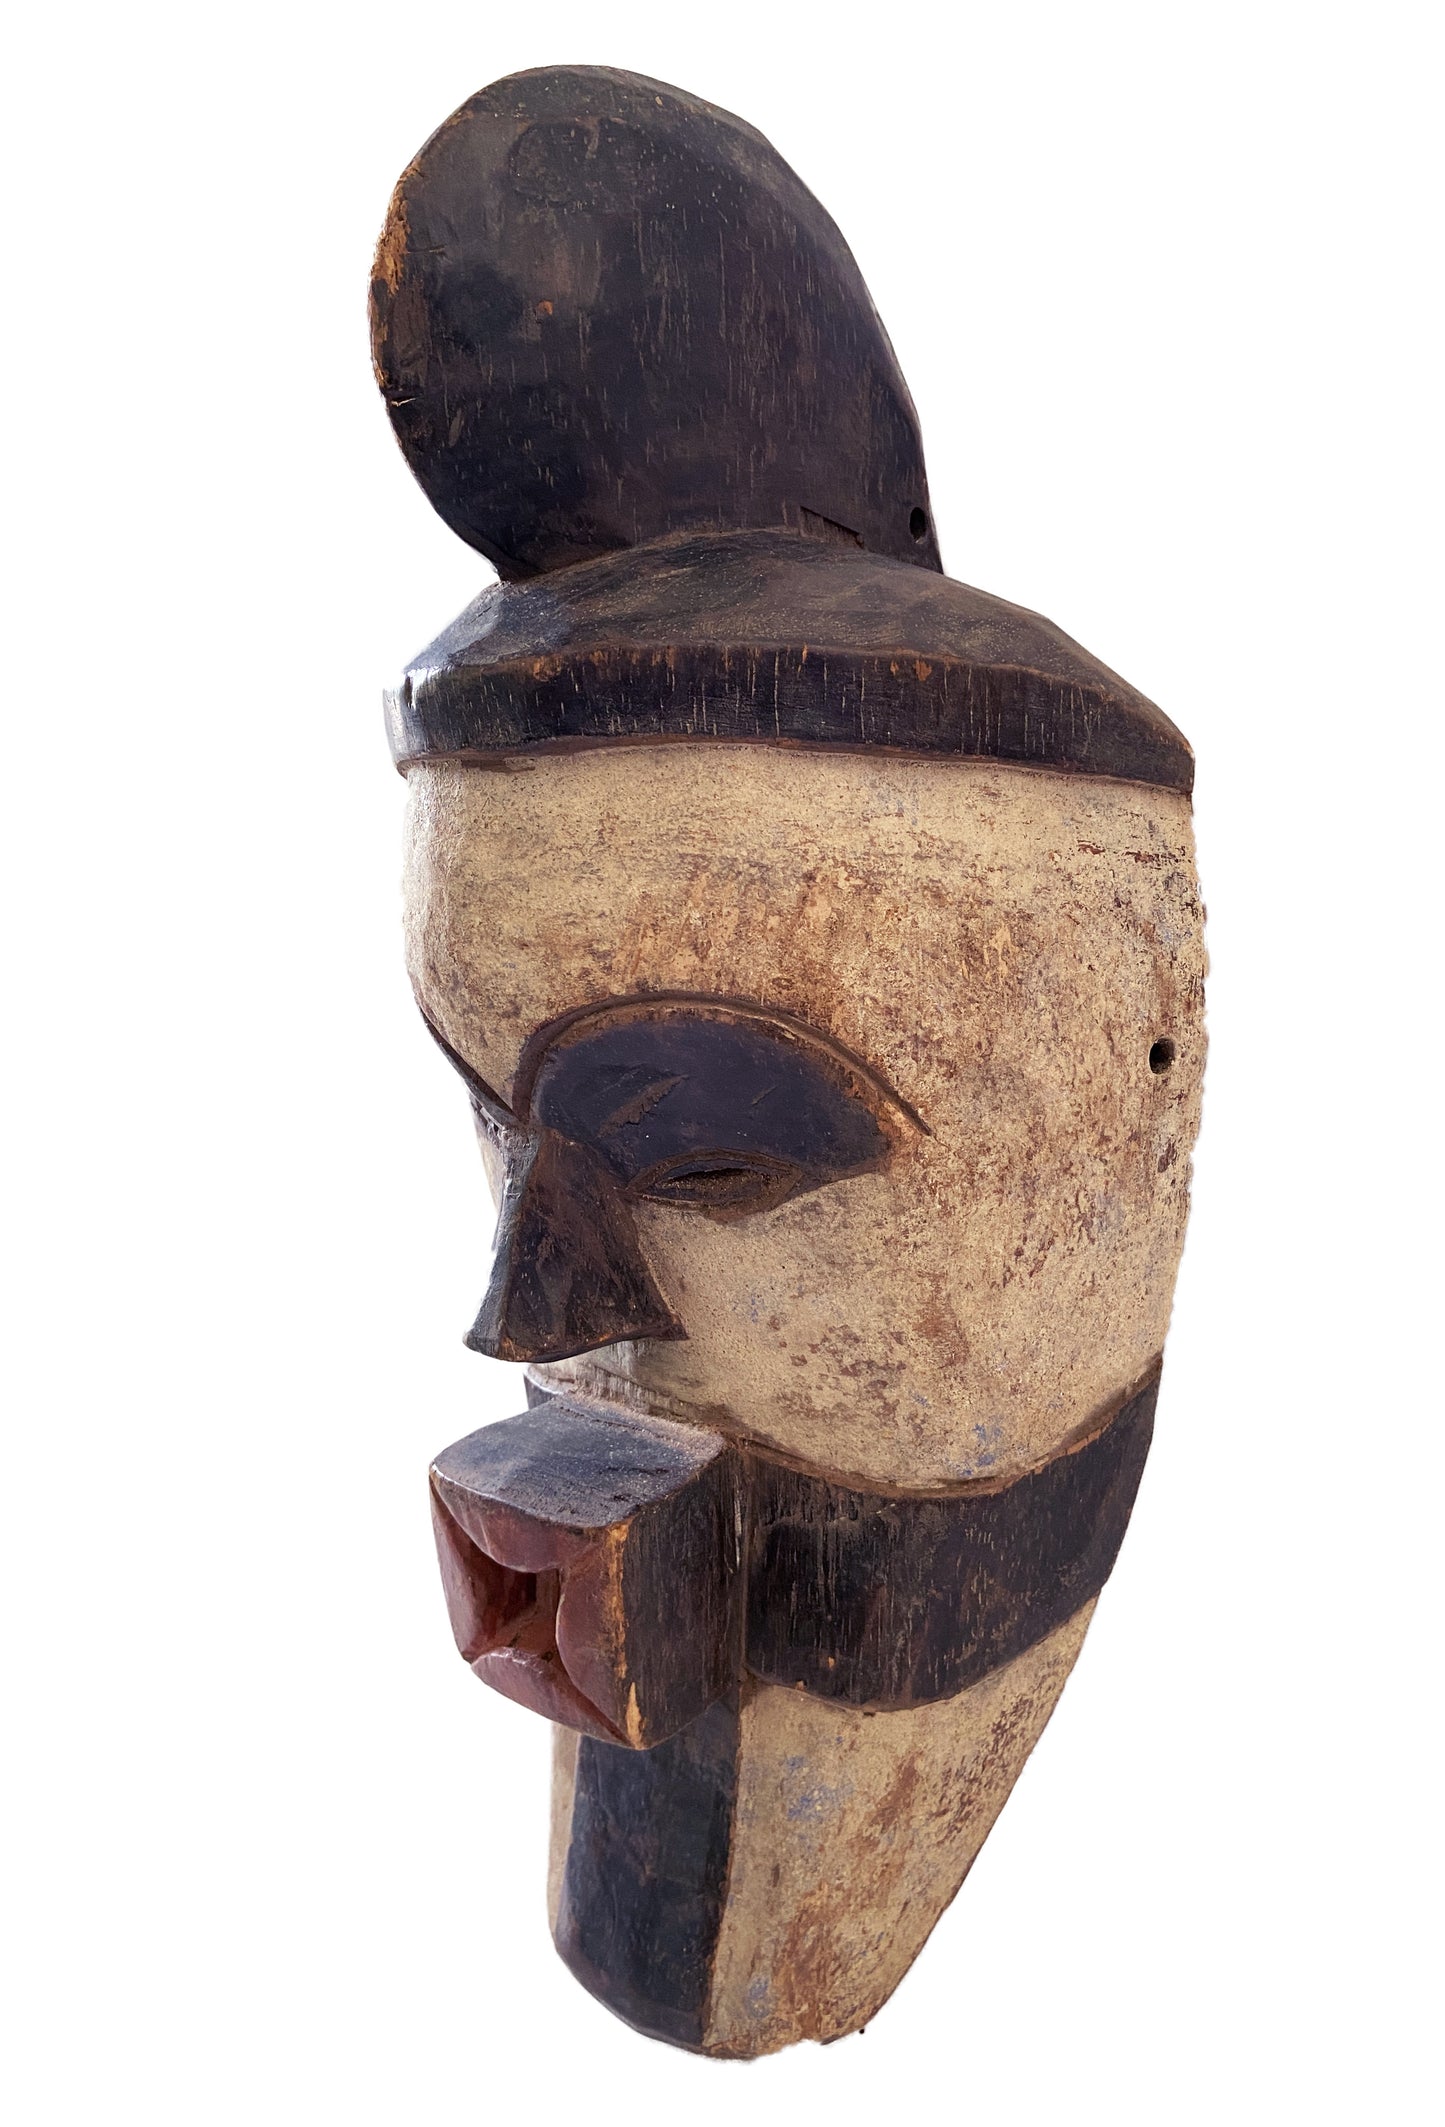 #2119 African Fang Mask Gabon 18" H